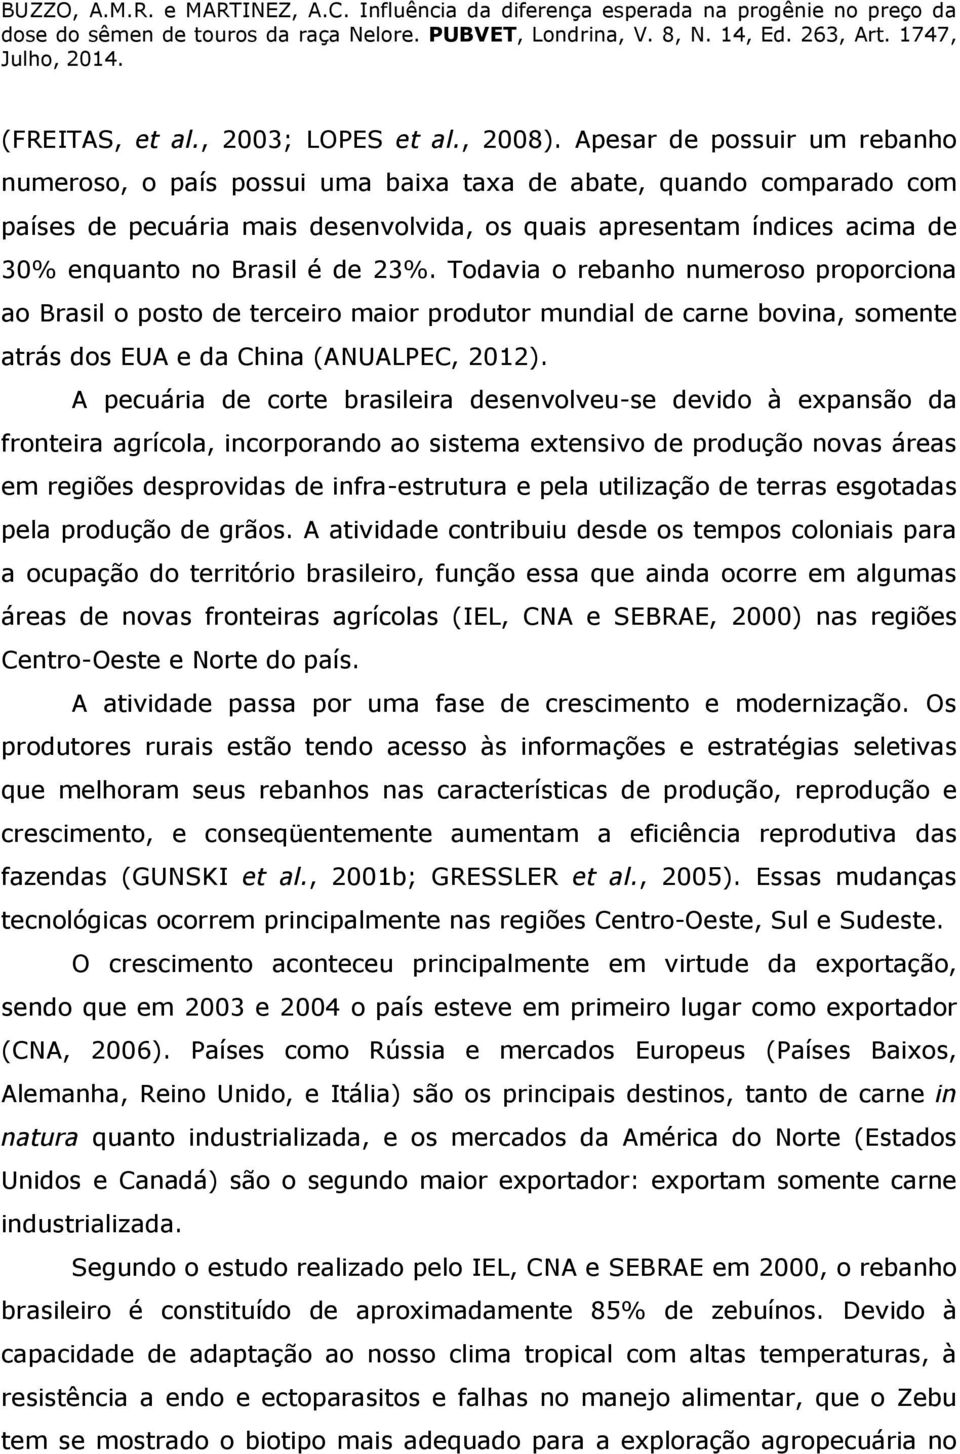 de 23%. Todavia o rebanho numeroso proporciona ao Brasil o posto de terceiro maior produtor mundial de carne bovina, somente atrás dos EUA e da China (ANUALPEC, 2012).